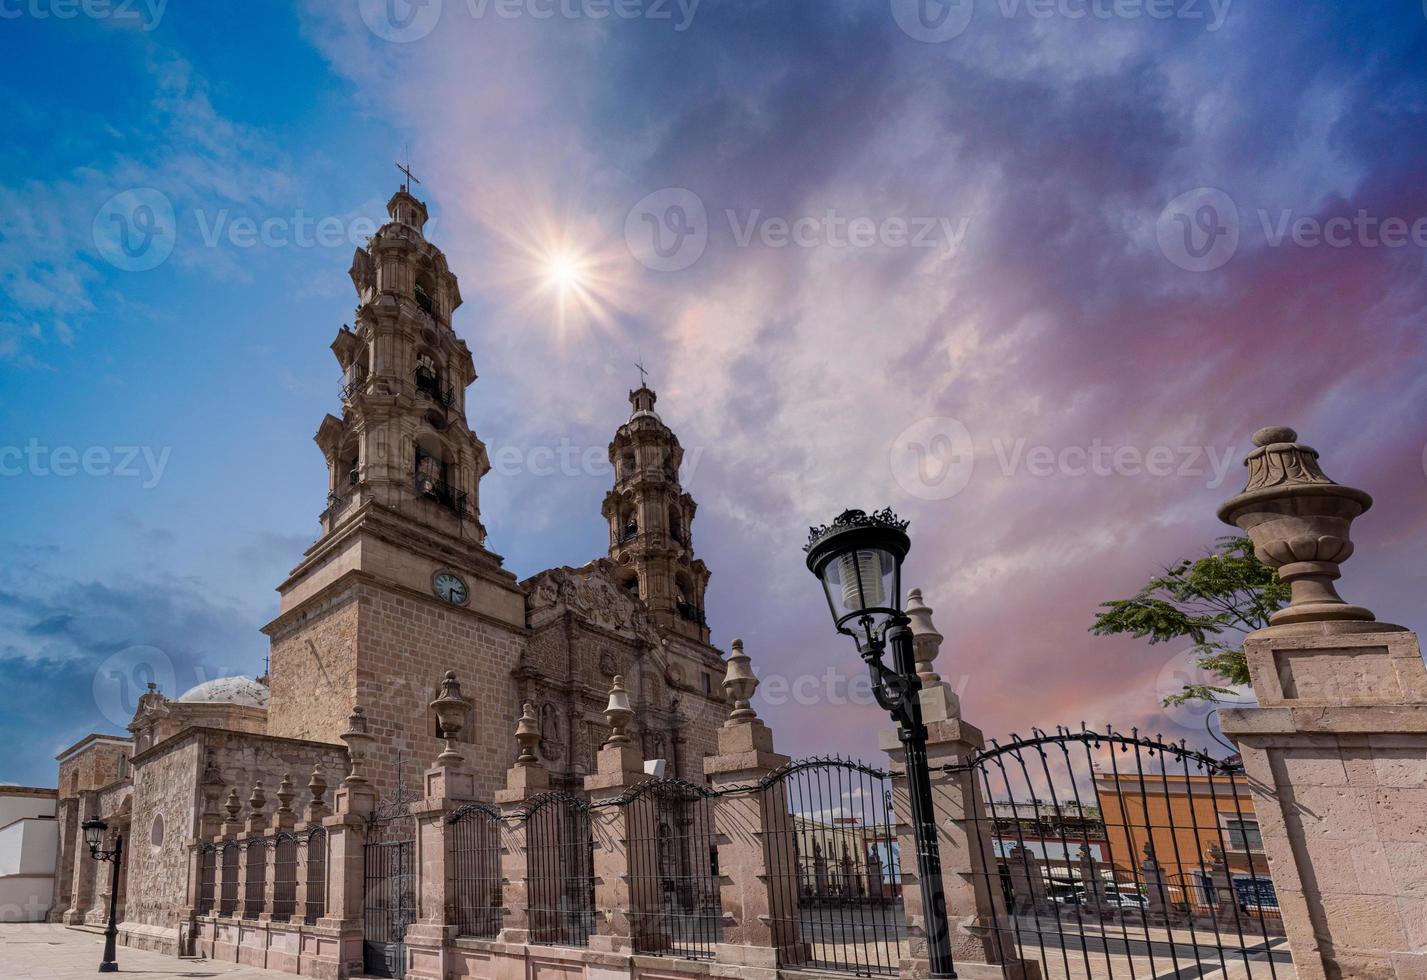 Mexico, Aguascalientes Cathedral Basilica in historic colonial center near Plaza de la Patria photo